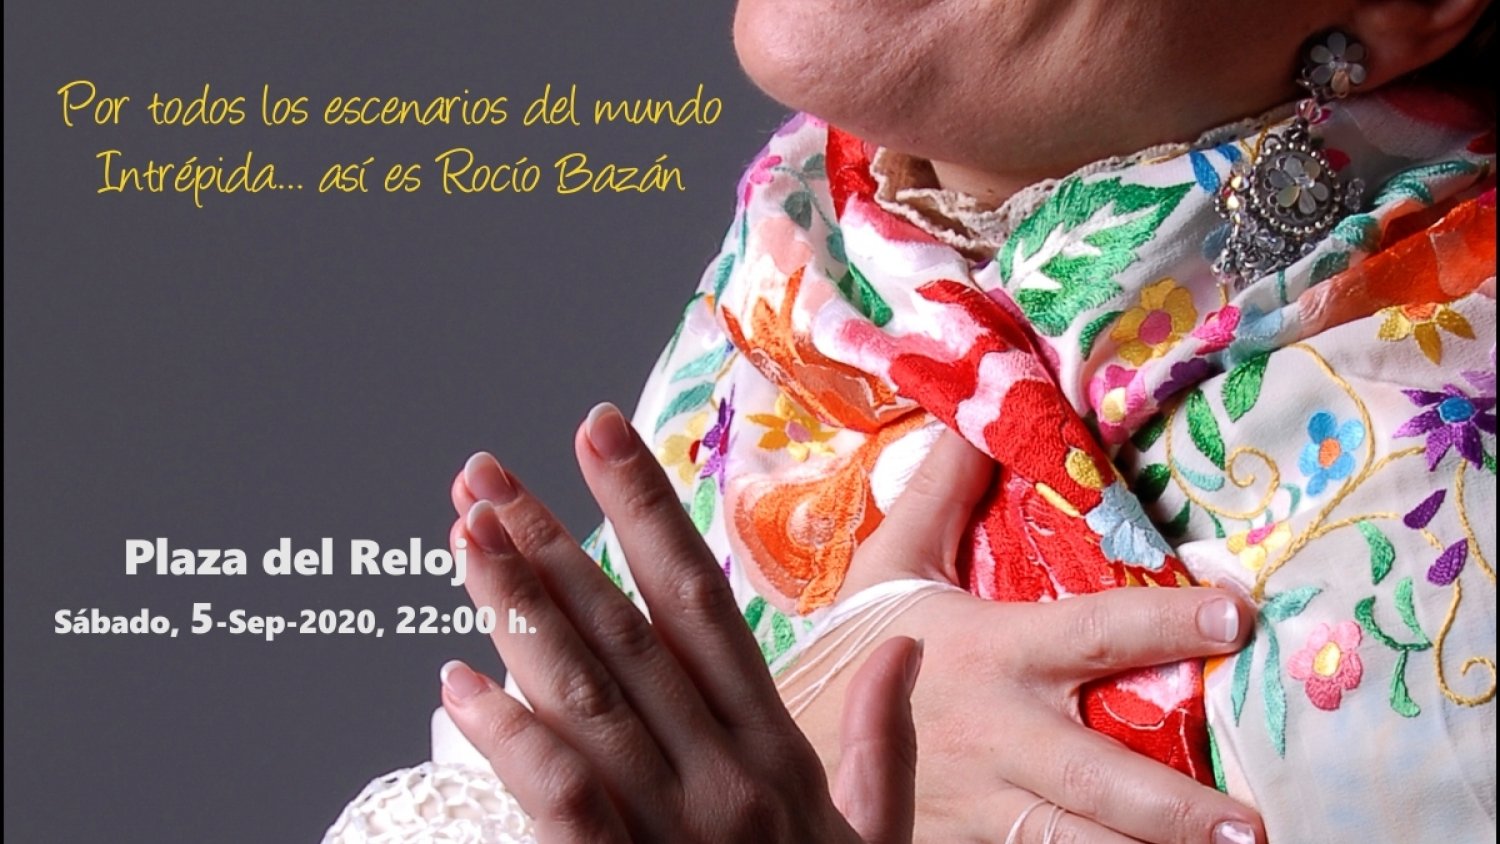 La cantaora Rocío Bazán presenta en Estepona  ‘Intrépida’ en homenaje a sus antepasados